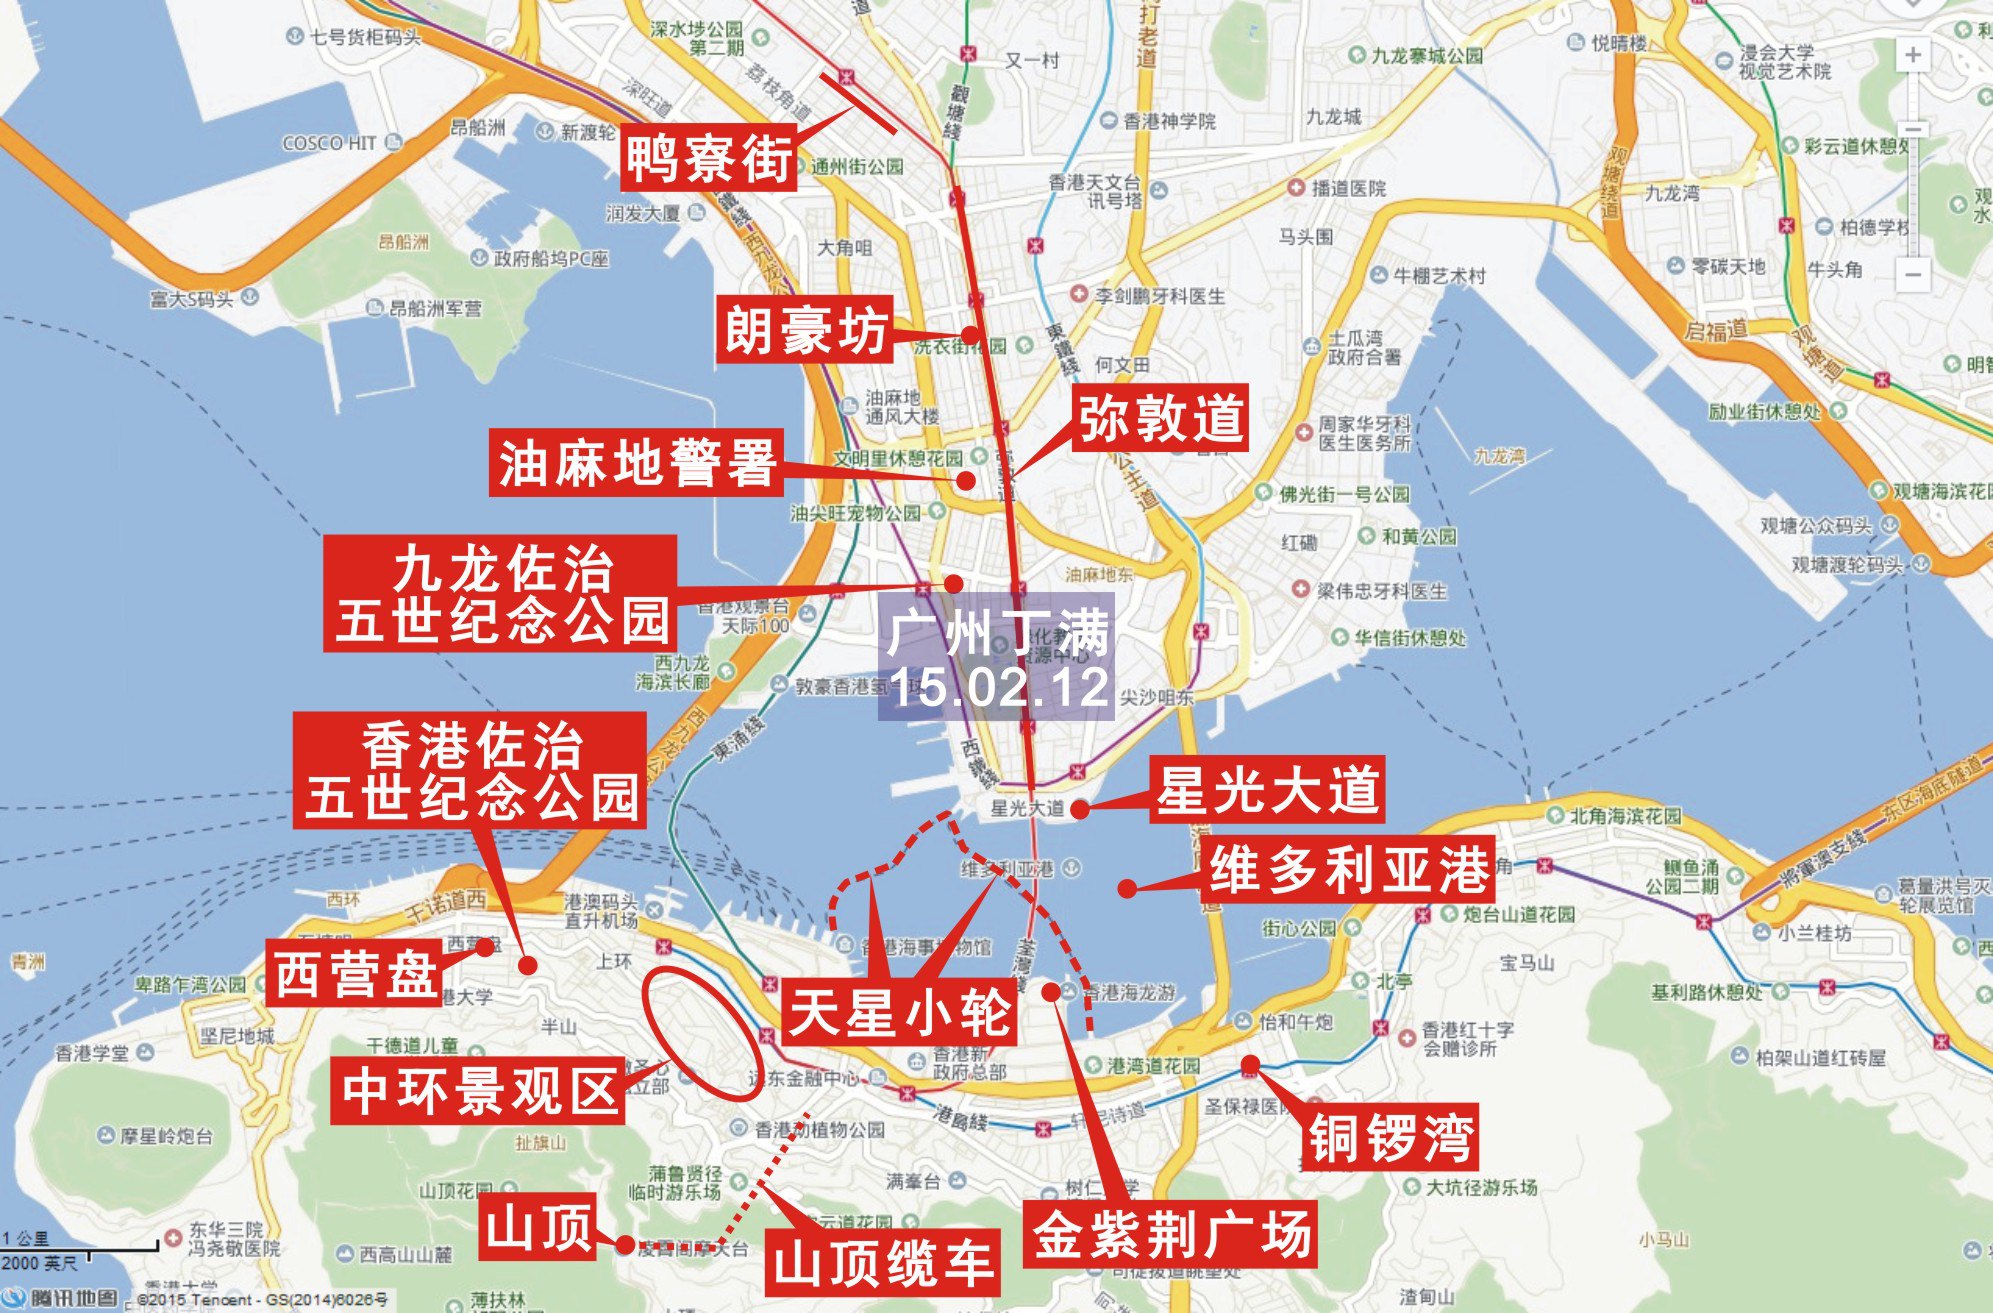 香港3天自行游的详细行程安排该如何安排呢?_旅游_胖人服饰网